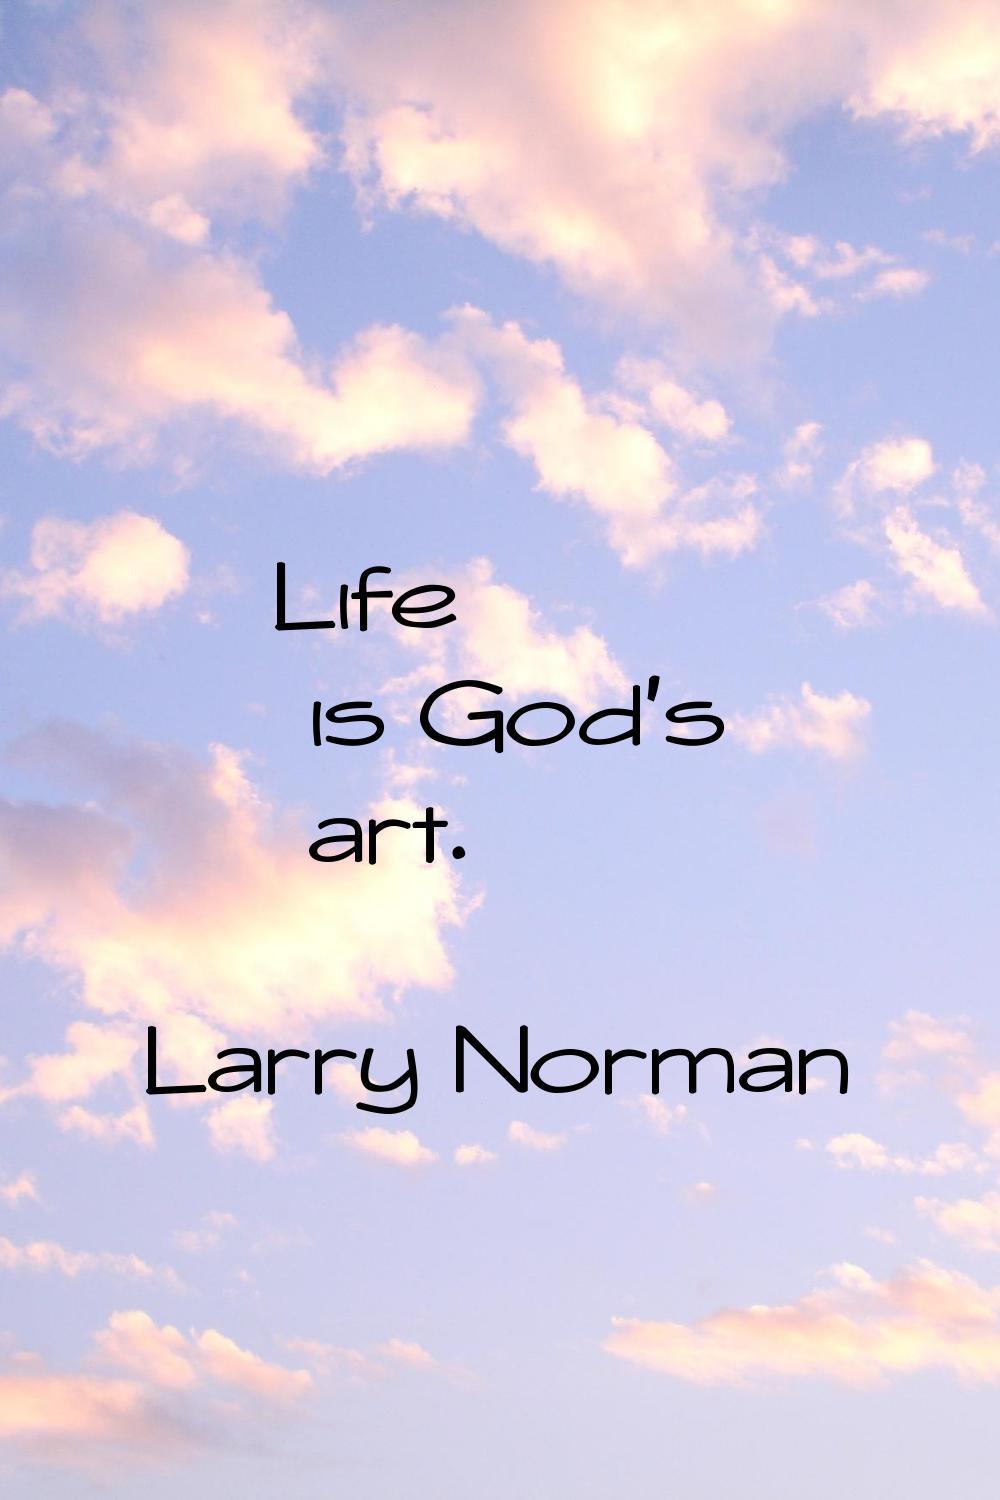 Life is God's art.